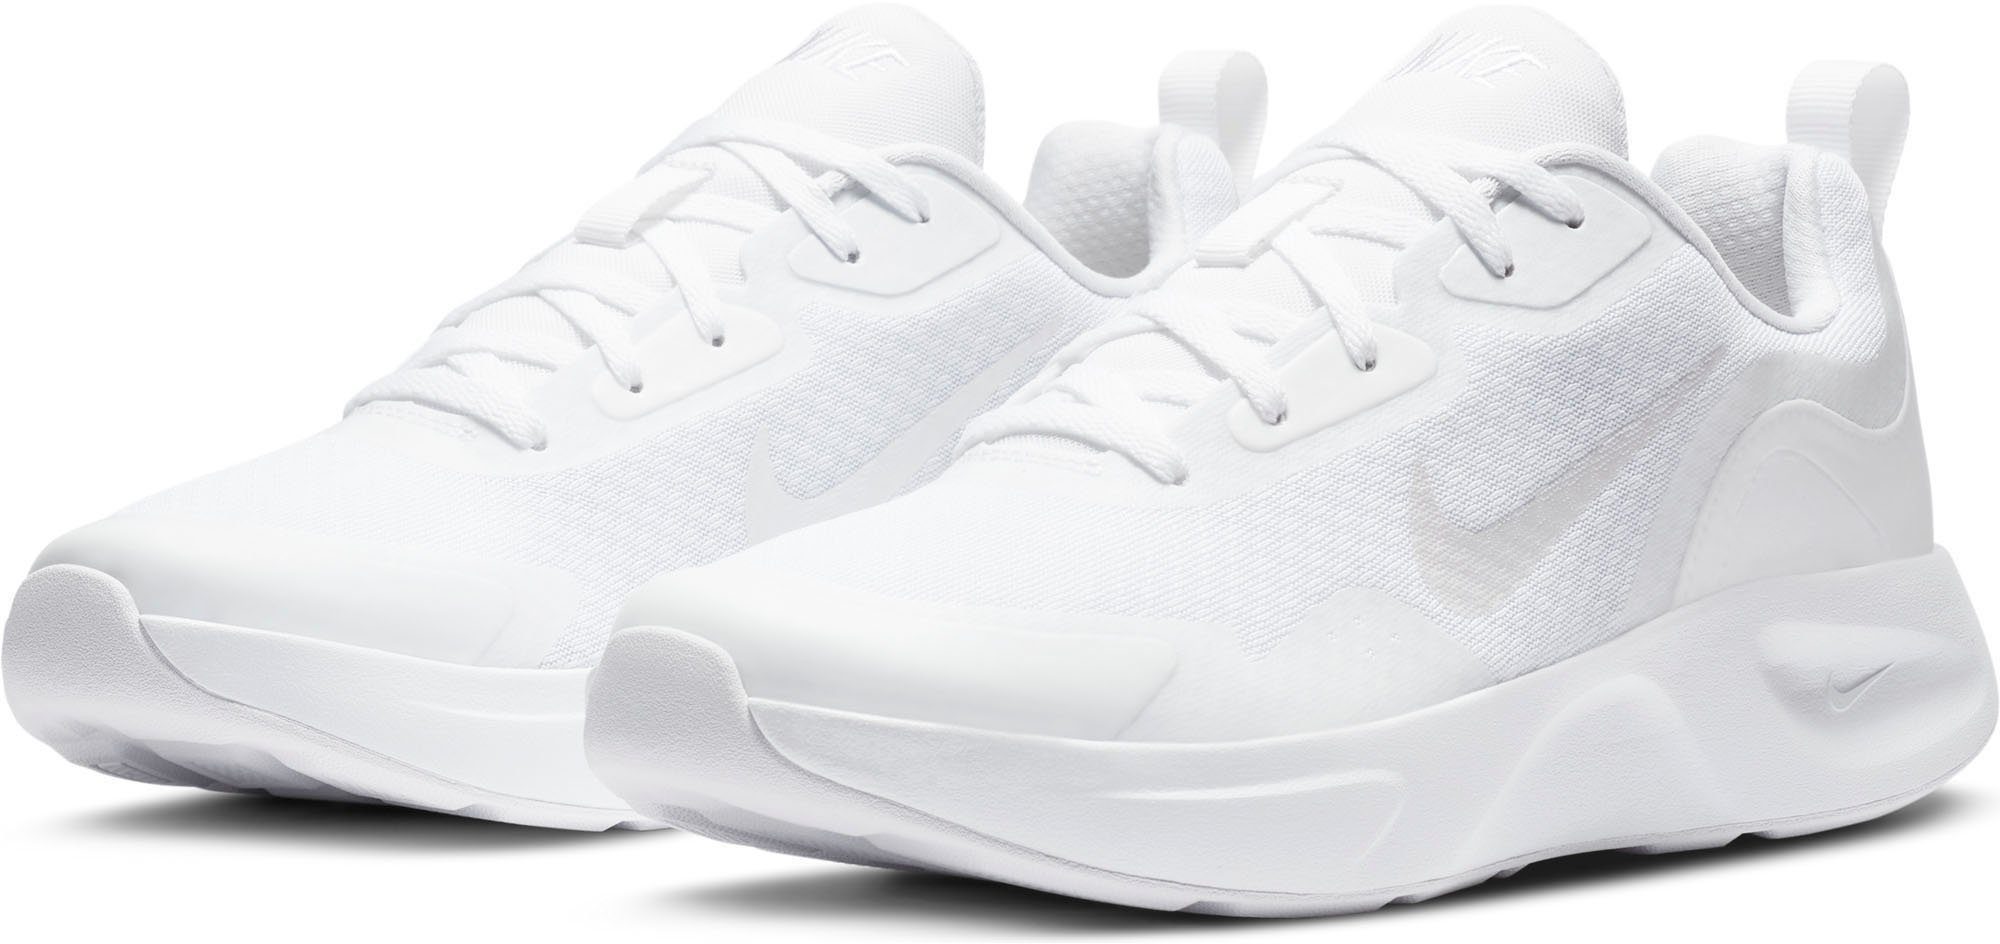 Weiße Nike Damenschuhe online kaufen | OTTO